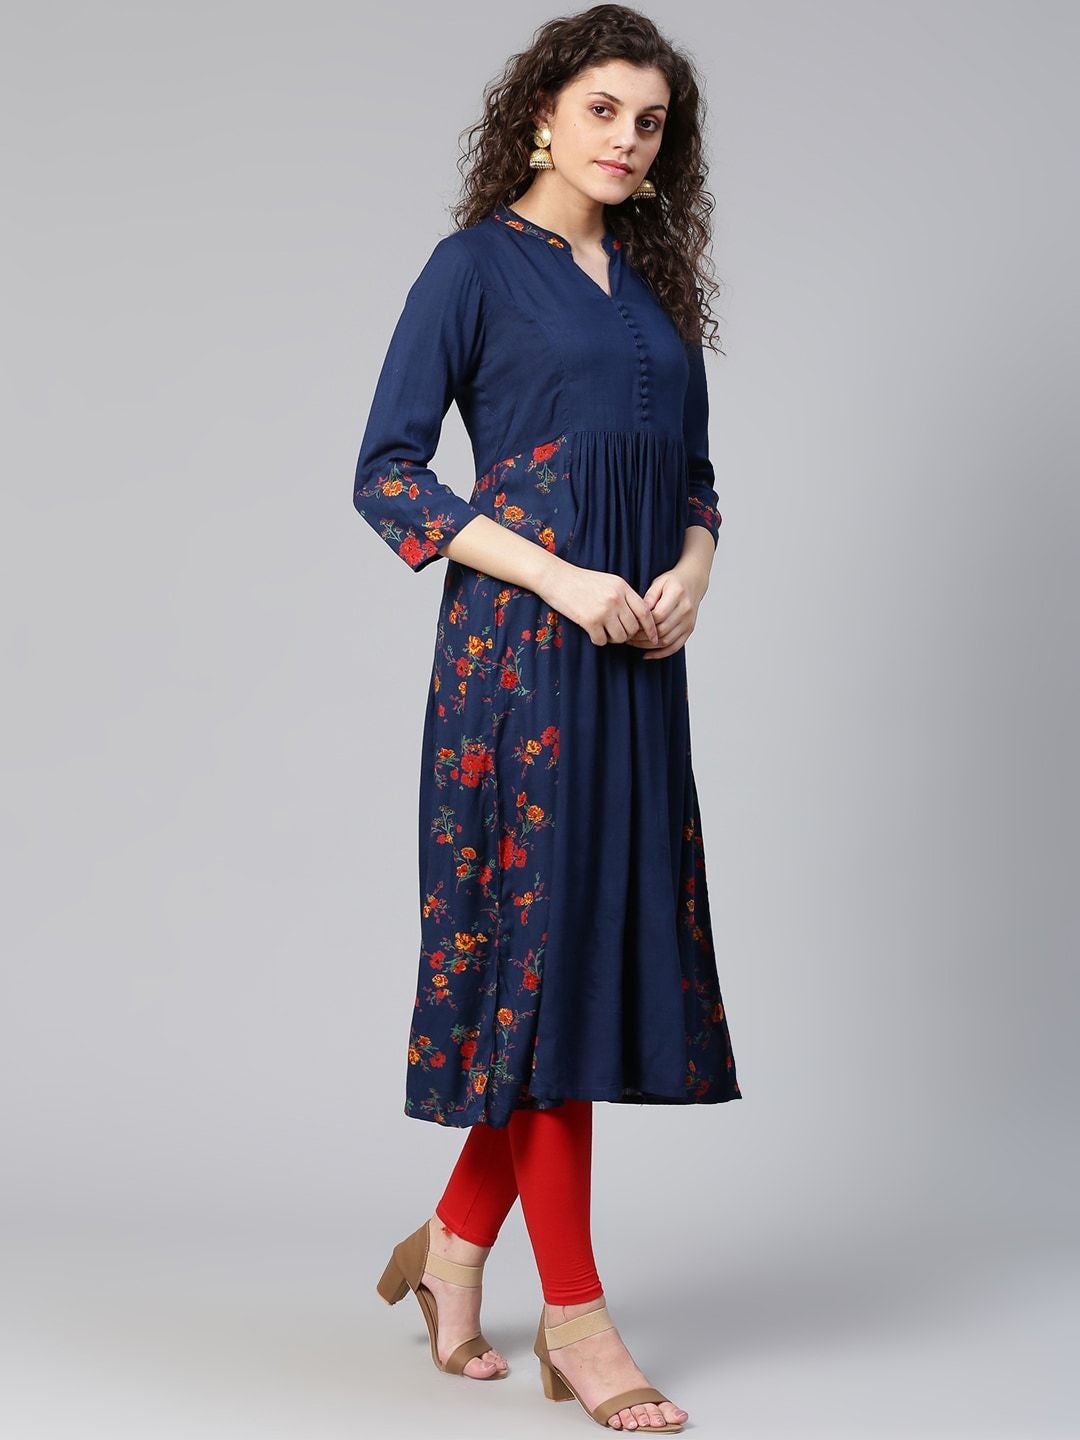 Women's Navy Blue & Red Floral Print Detail A-Line Kurta - Meeranshi